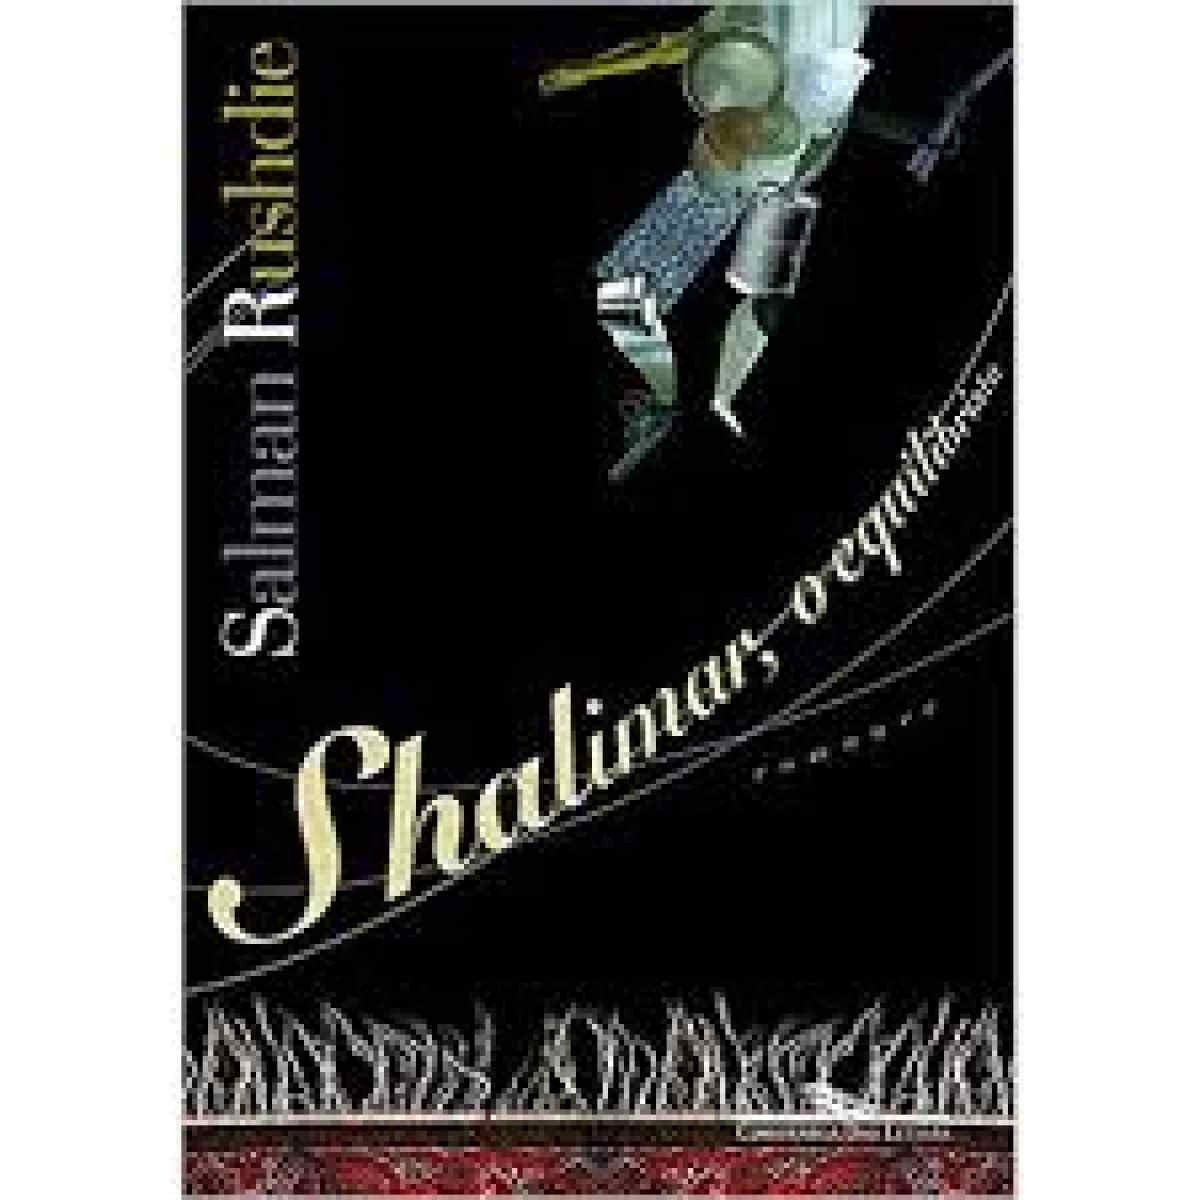 Capa do livro "Shalimar, o equilibrista" (2005)